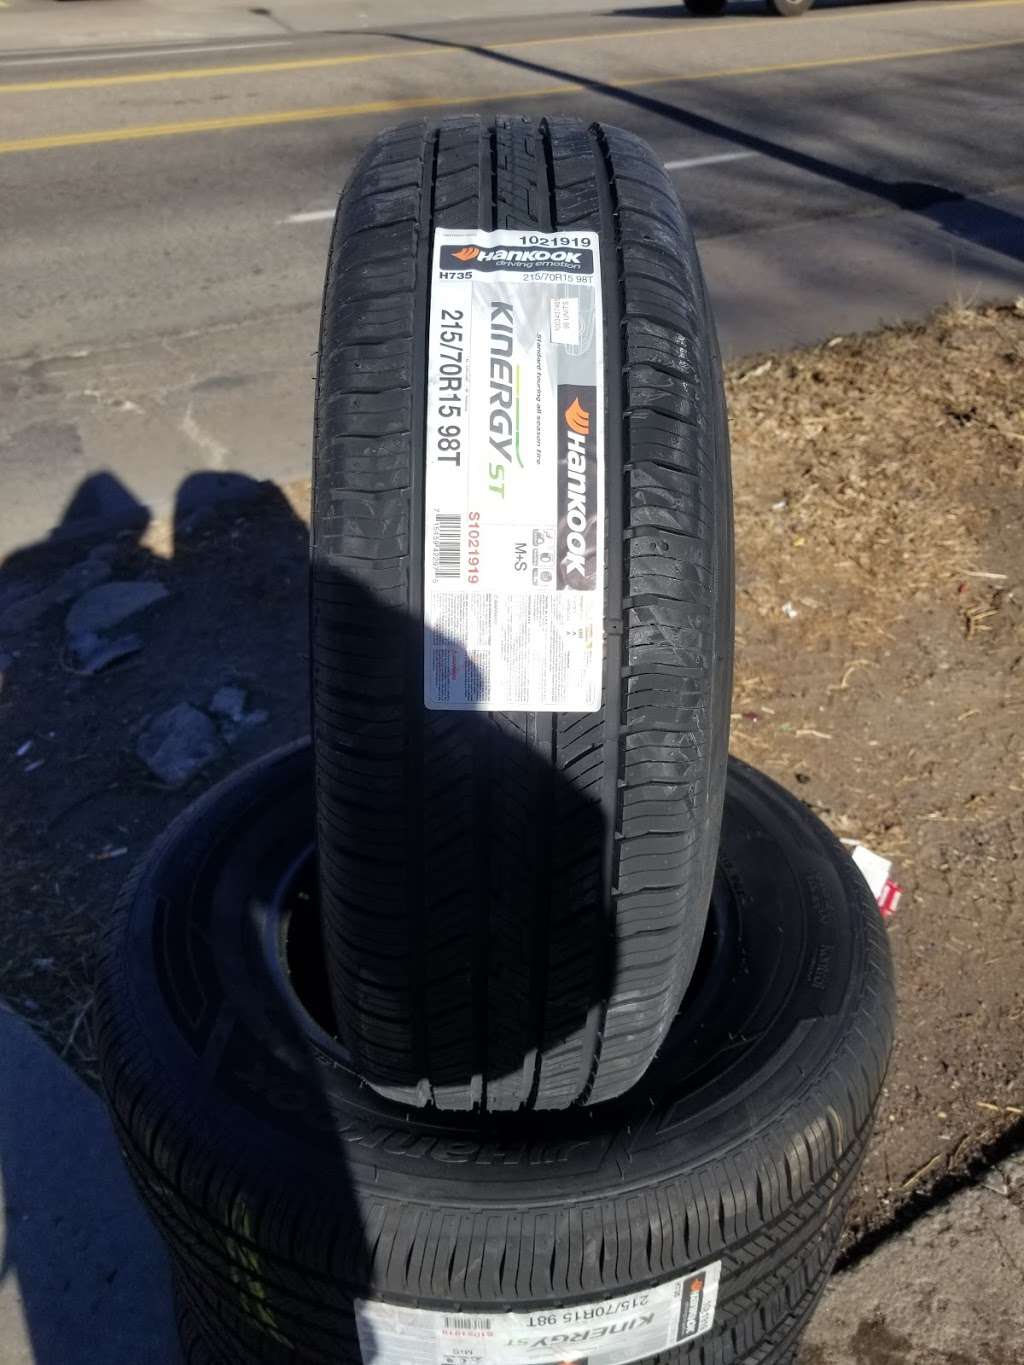 Sanchez tire service | 1550 W Alameda Ave, Denver, CO 80223 | Phone: (720) 585-9913